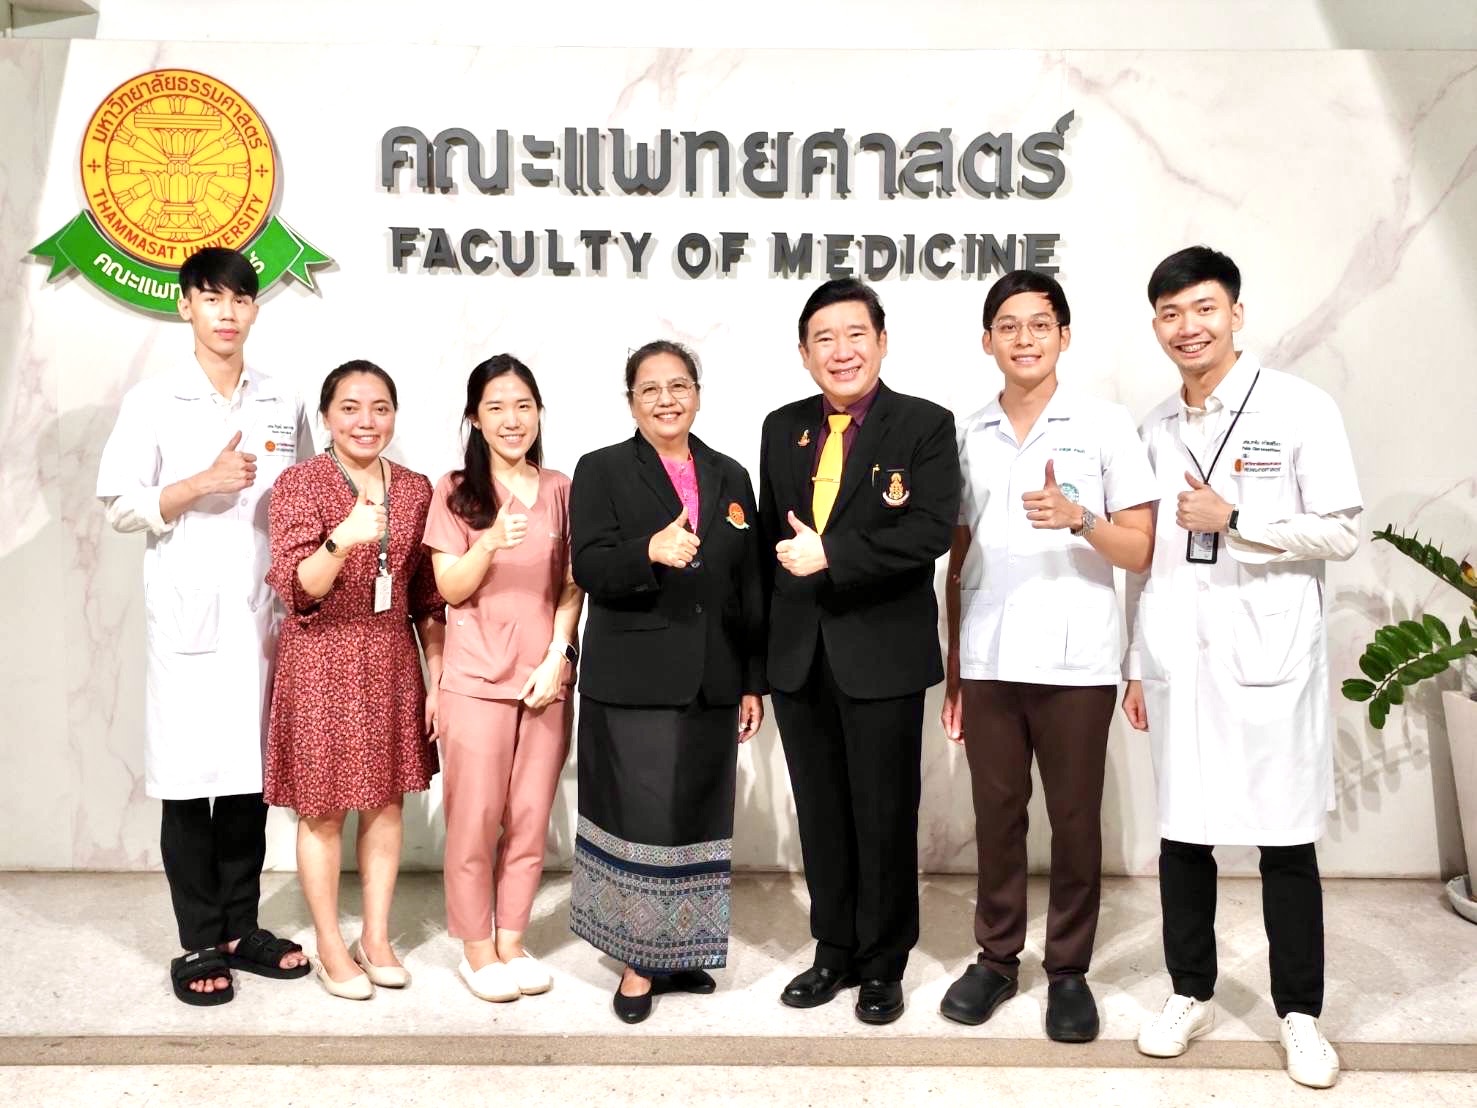 ปทุมธานี-ทีมจักษุแพทย์ไทยคว้ารางวัลพิเศษในงานประกวดนวัตกรรมระดับนานาชาติที่สวิสเซอร์แลนด์